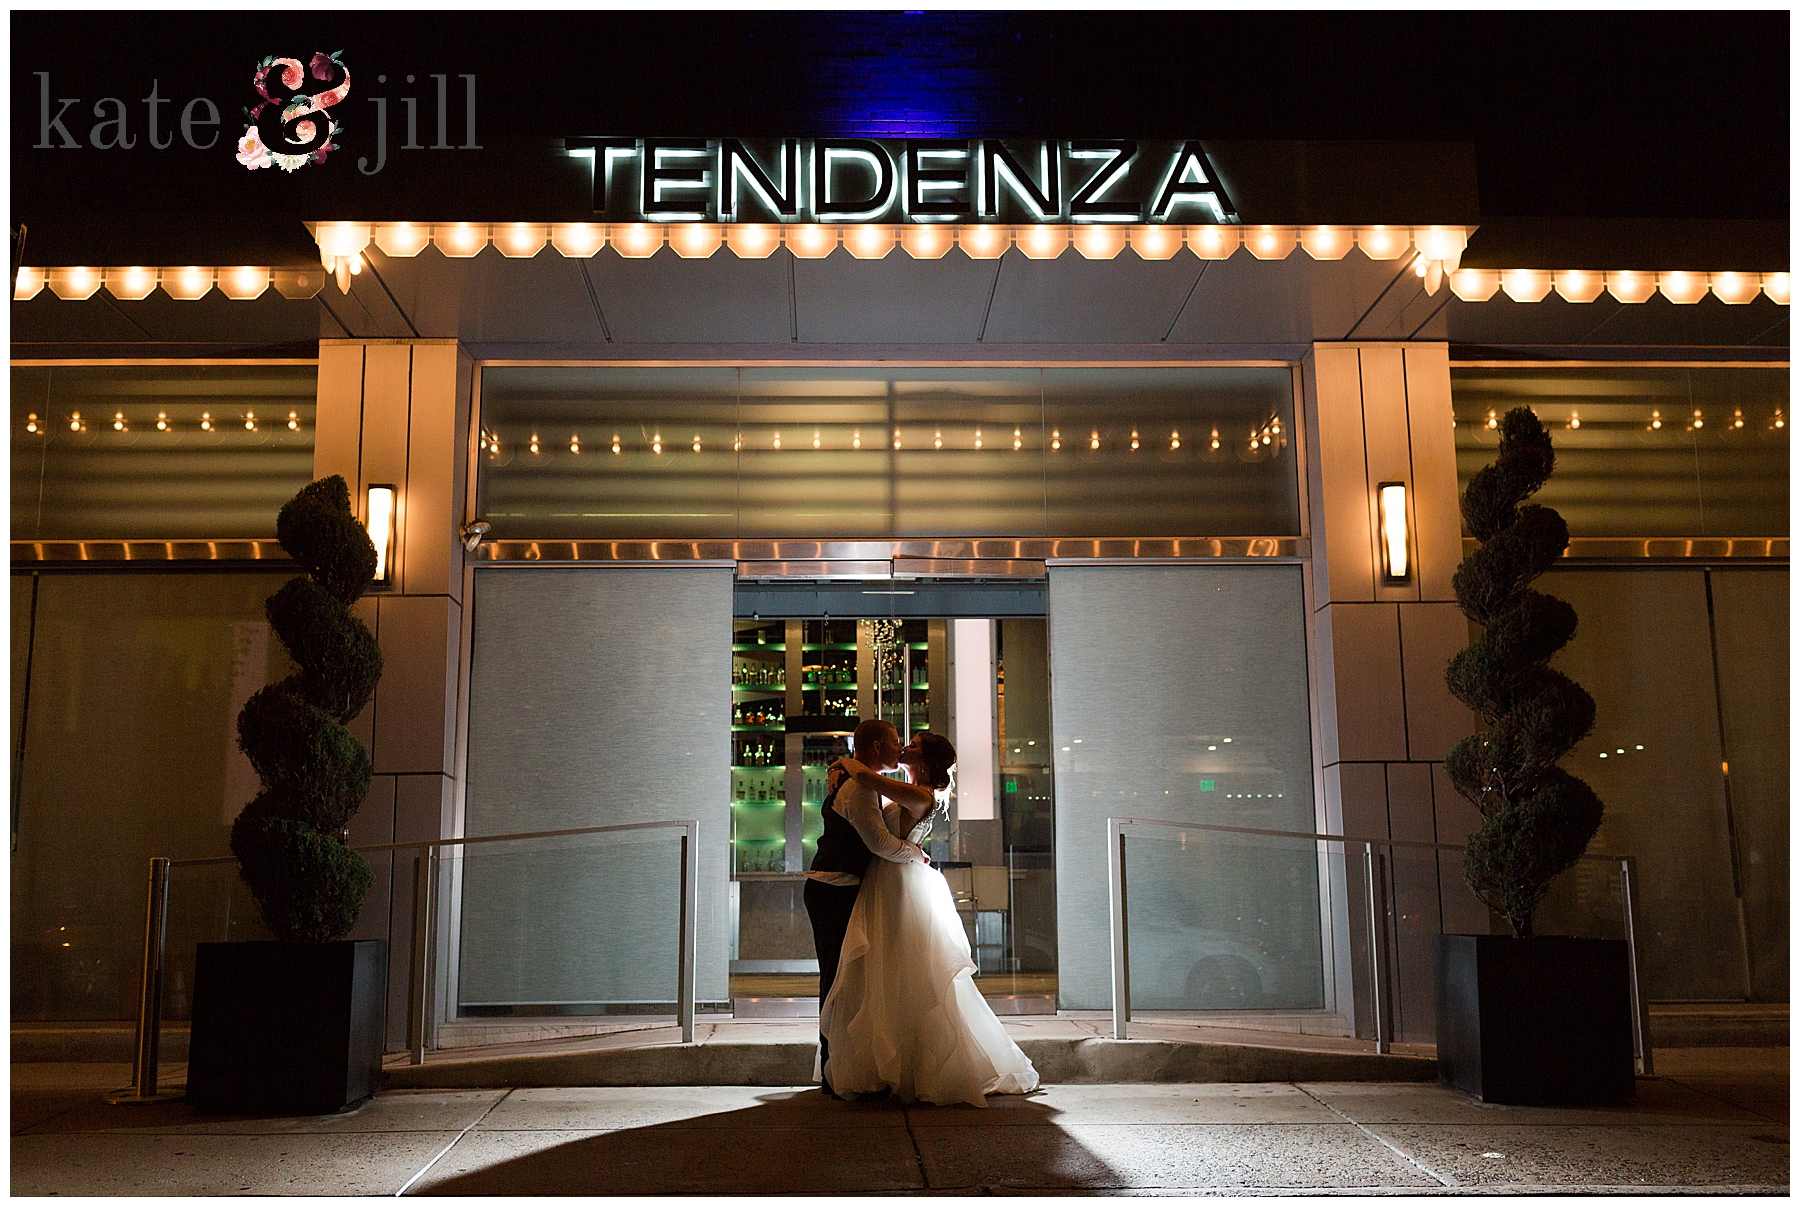 Tendenza wedding venue 